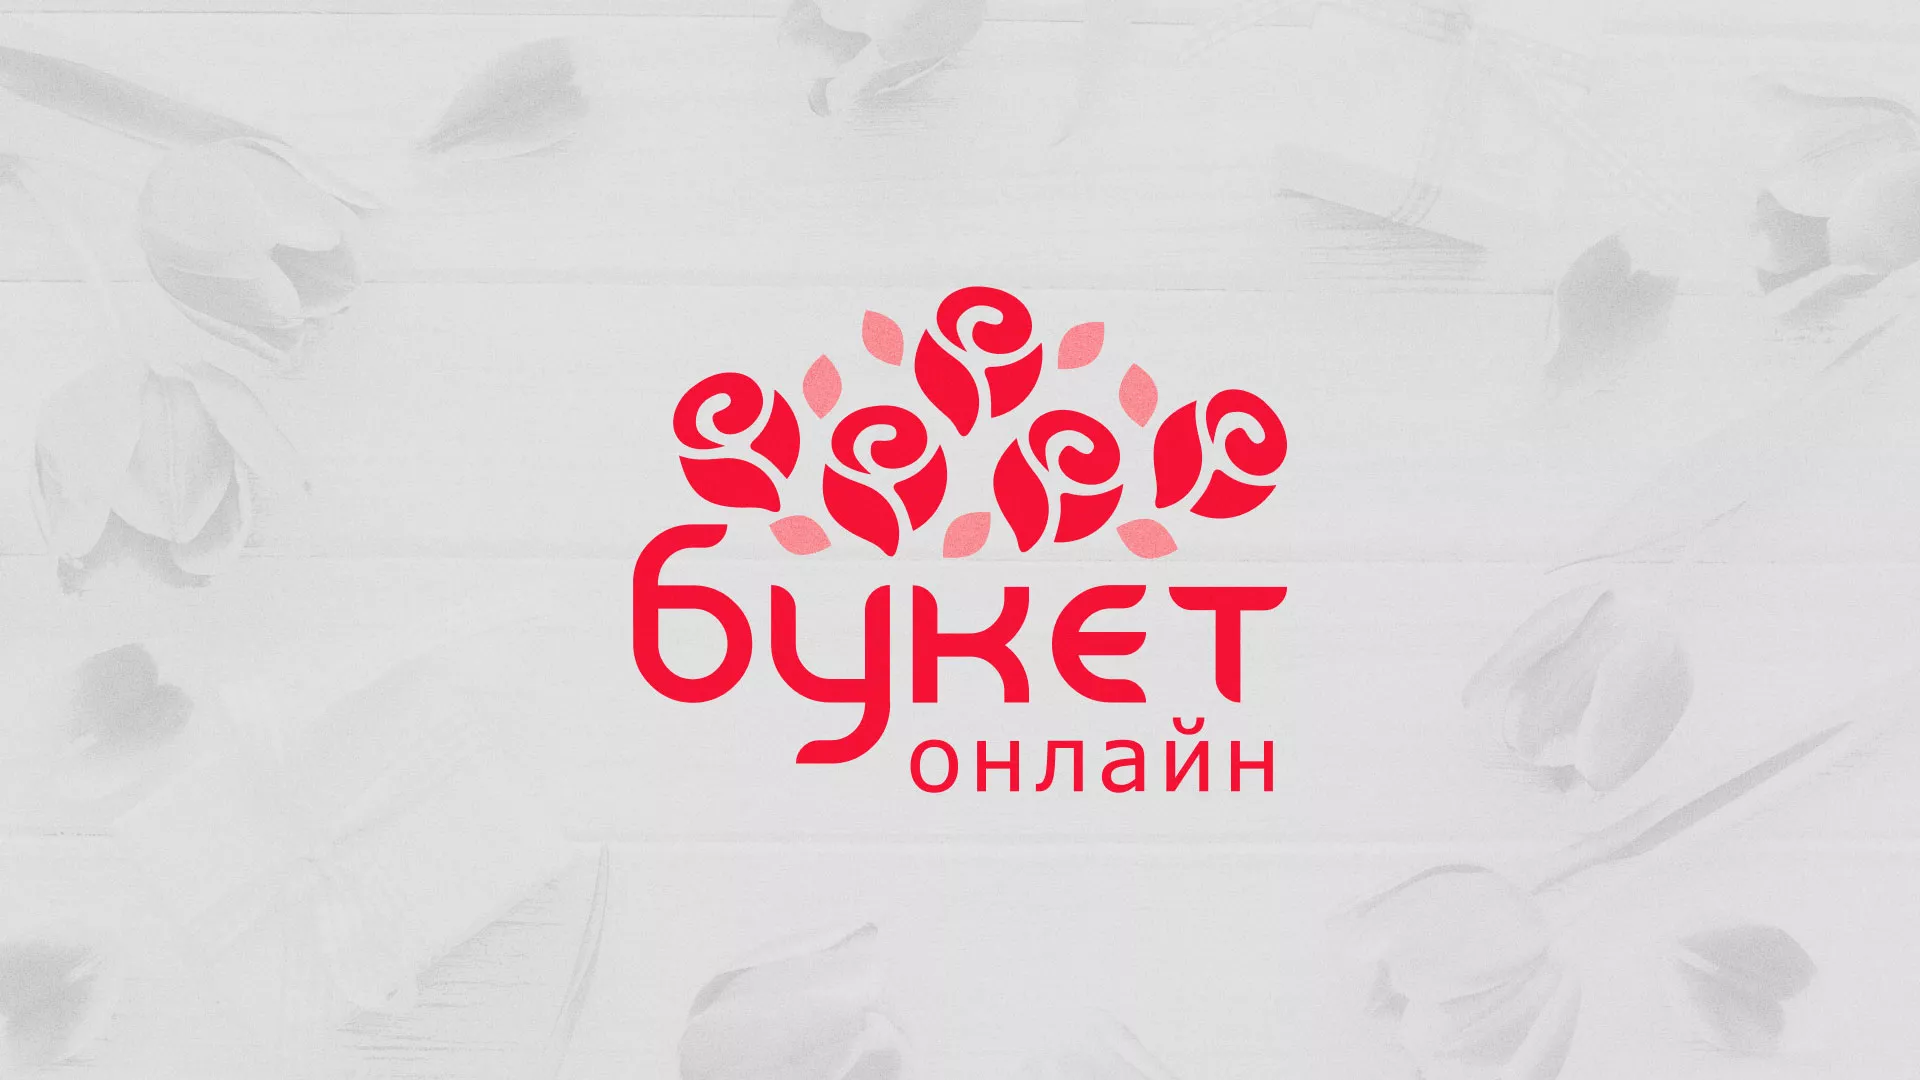 Создание интернет-магазина «Букет-онлайн» по цветам в Северске